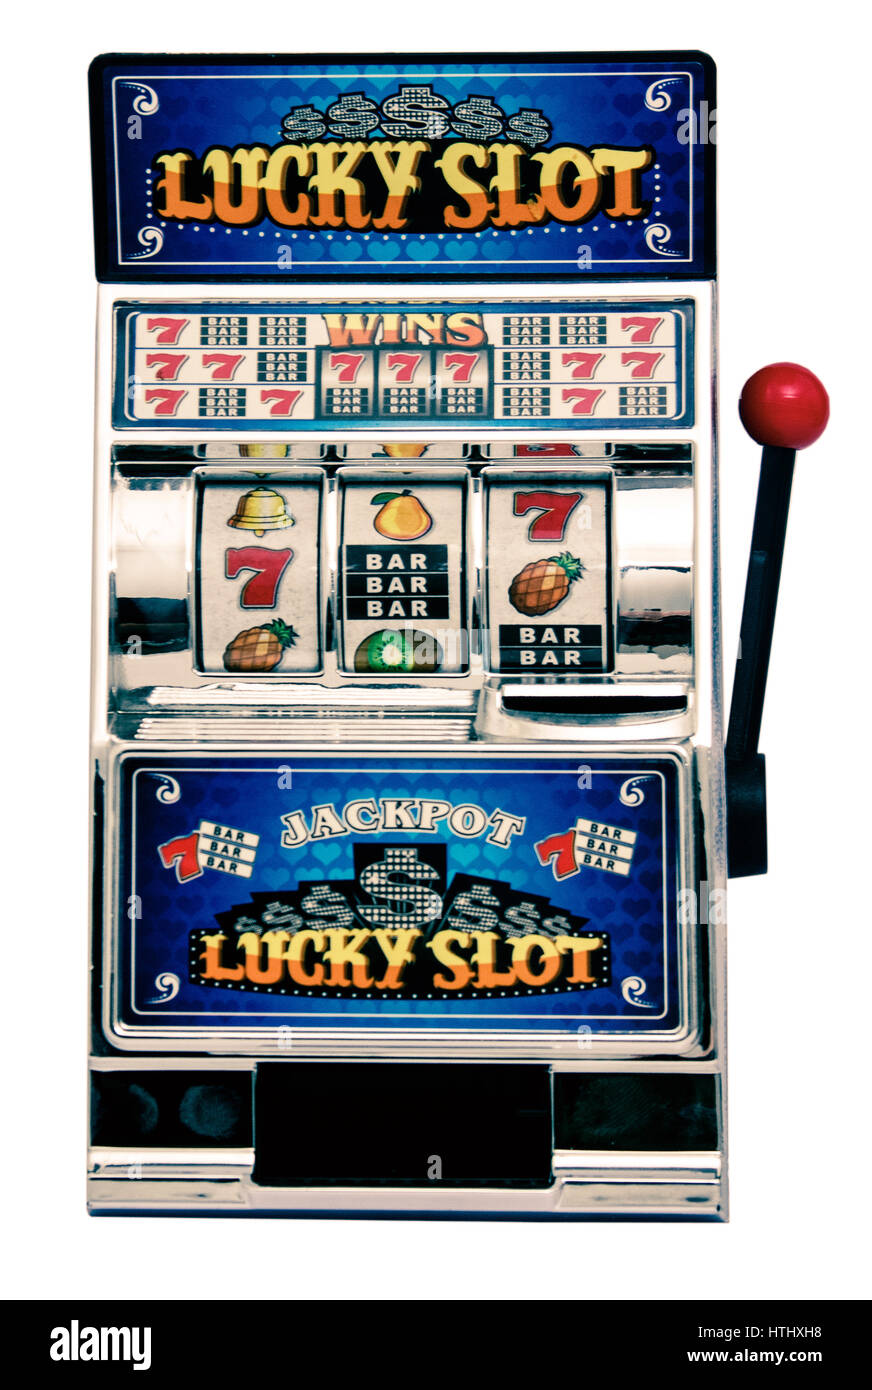 Wierook Haalbaar meteoor vintage slot machine Stock Photo - Alamy